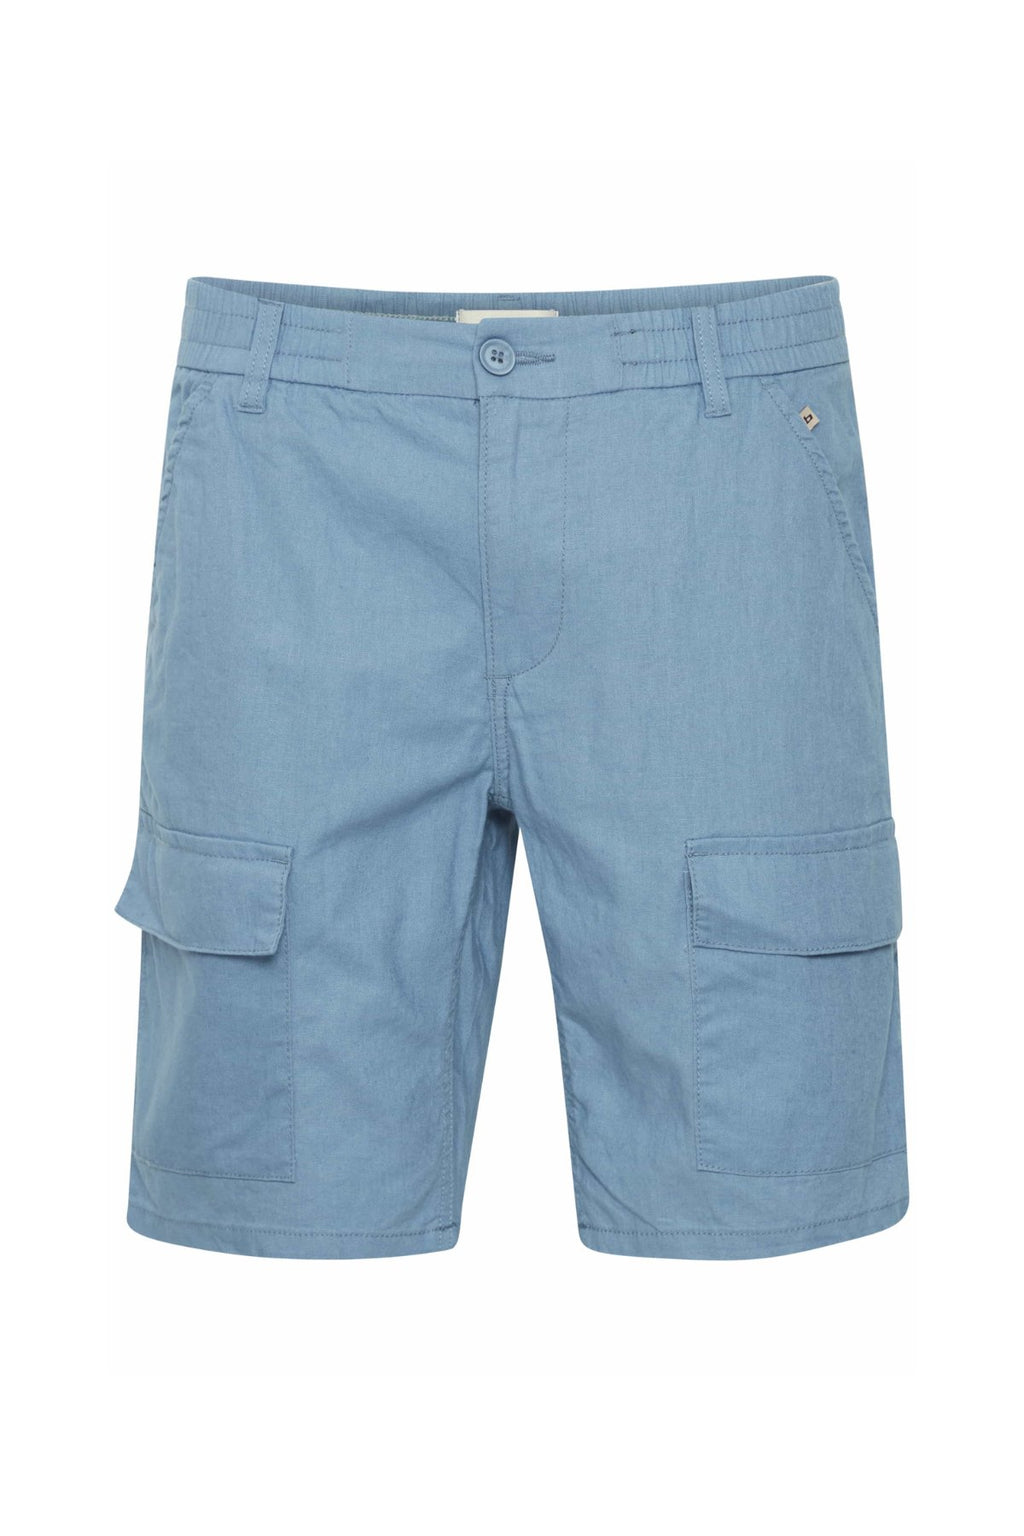 Cargo Leinen Shorts - Kapitän Blau